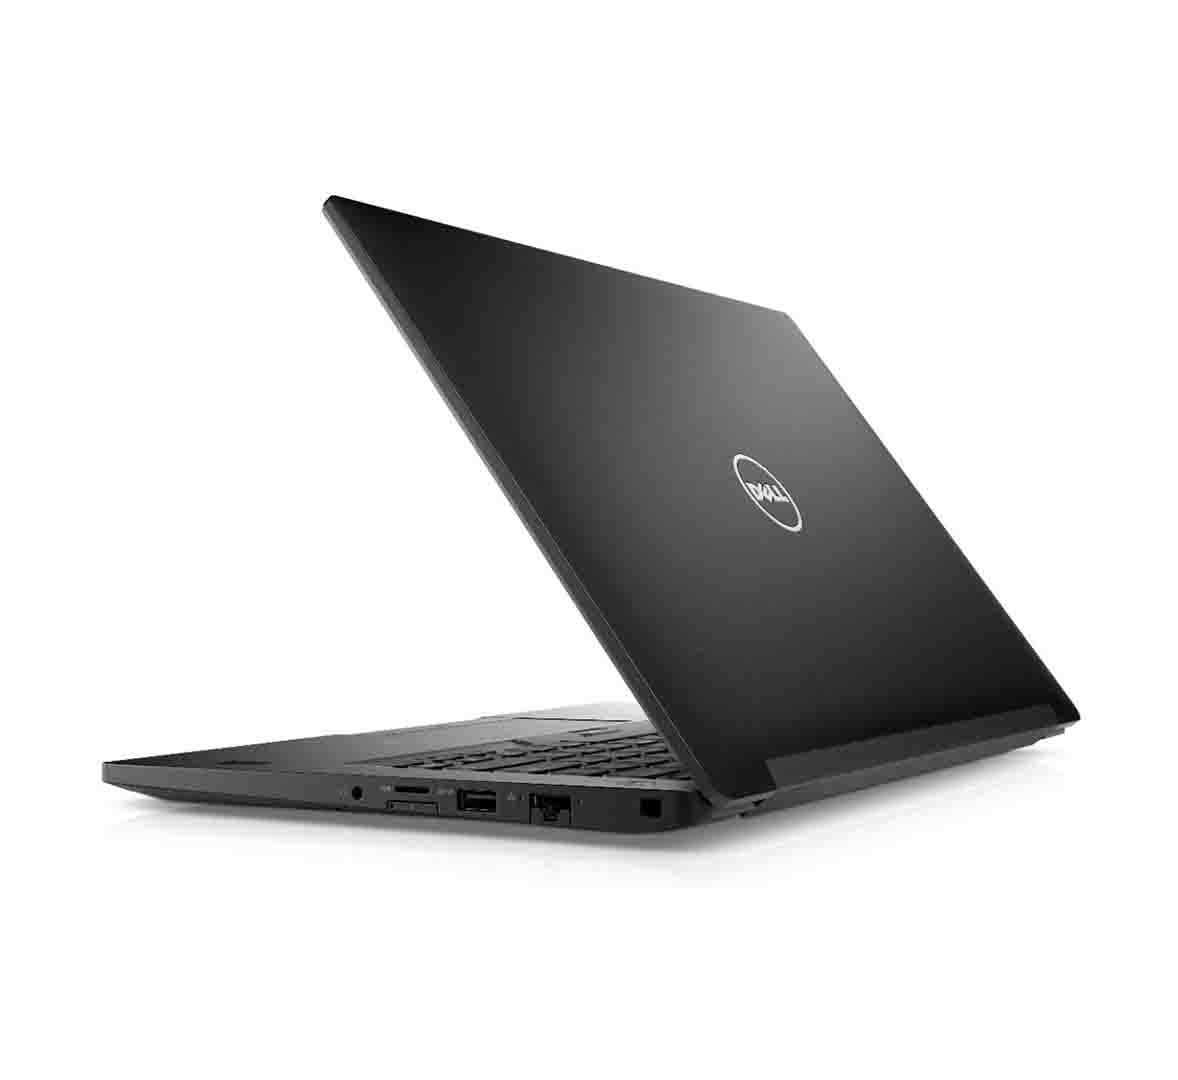 Dell Latitude E7480 Business Laptop, Intel Core i5-7th Gen CPU, 8GB RAM, 256GB SSD, 14.1 inch Display, Windows 10 Pro